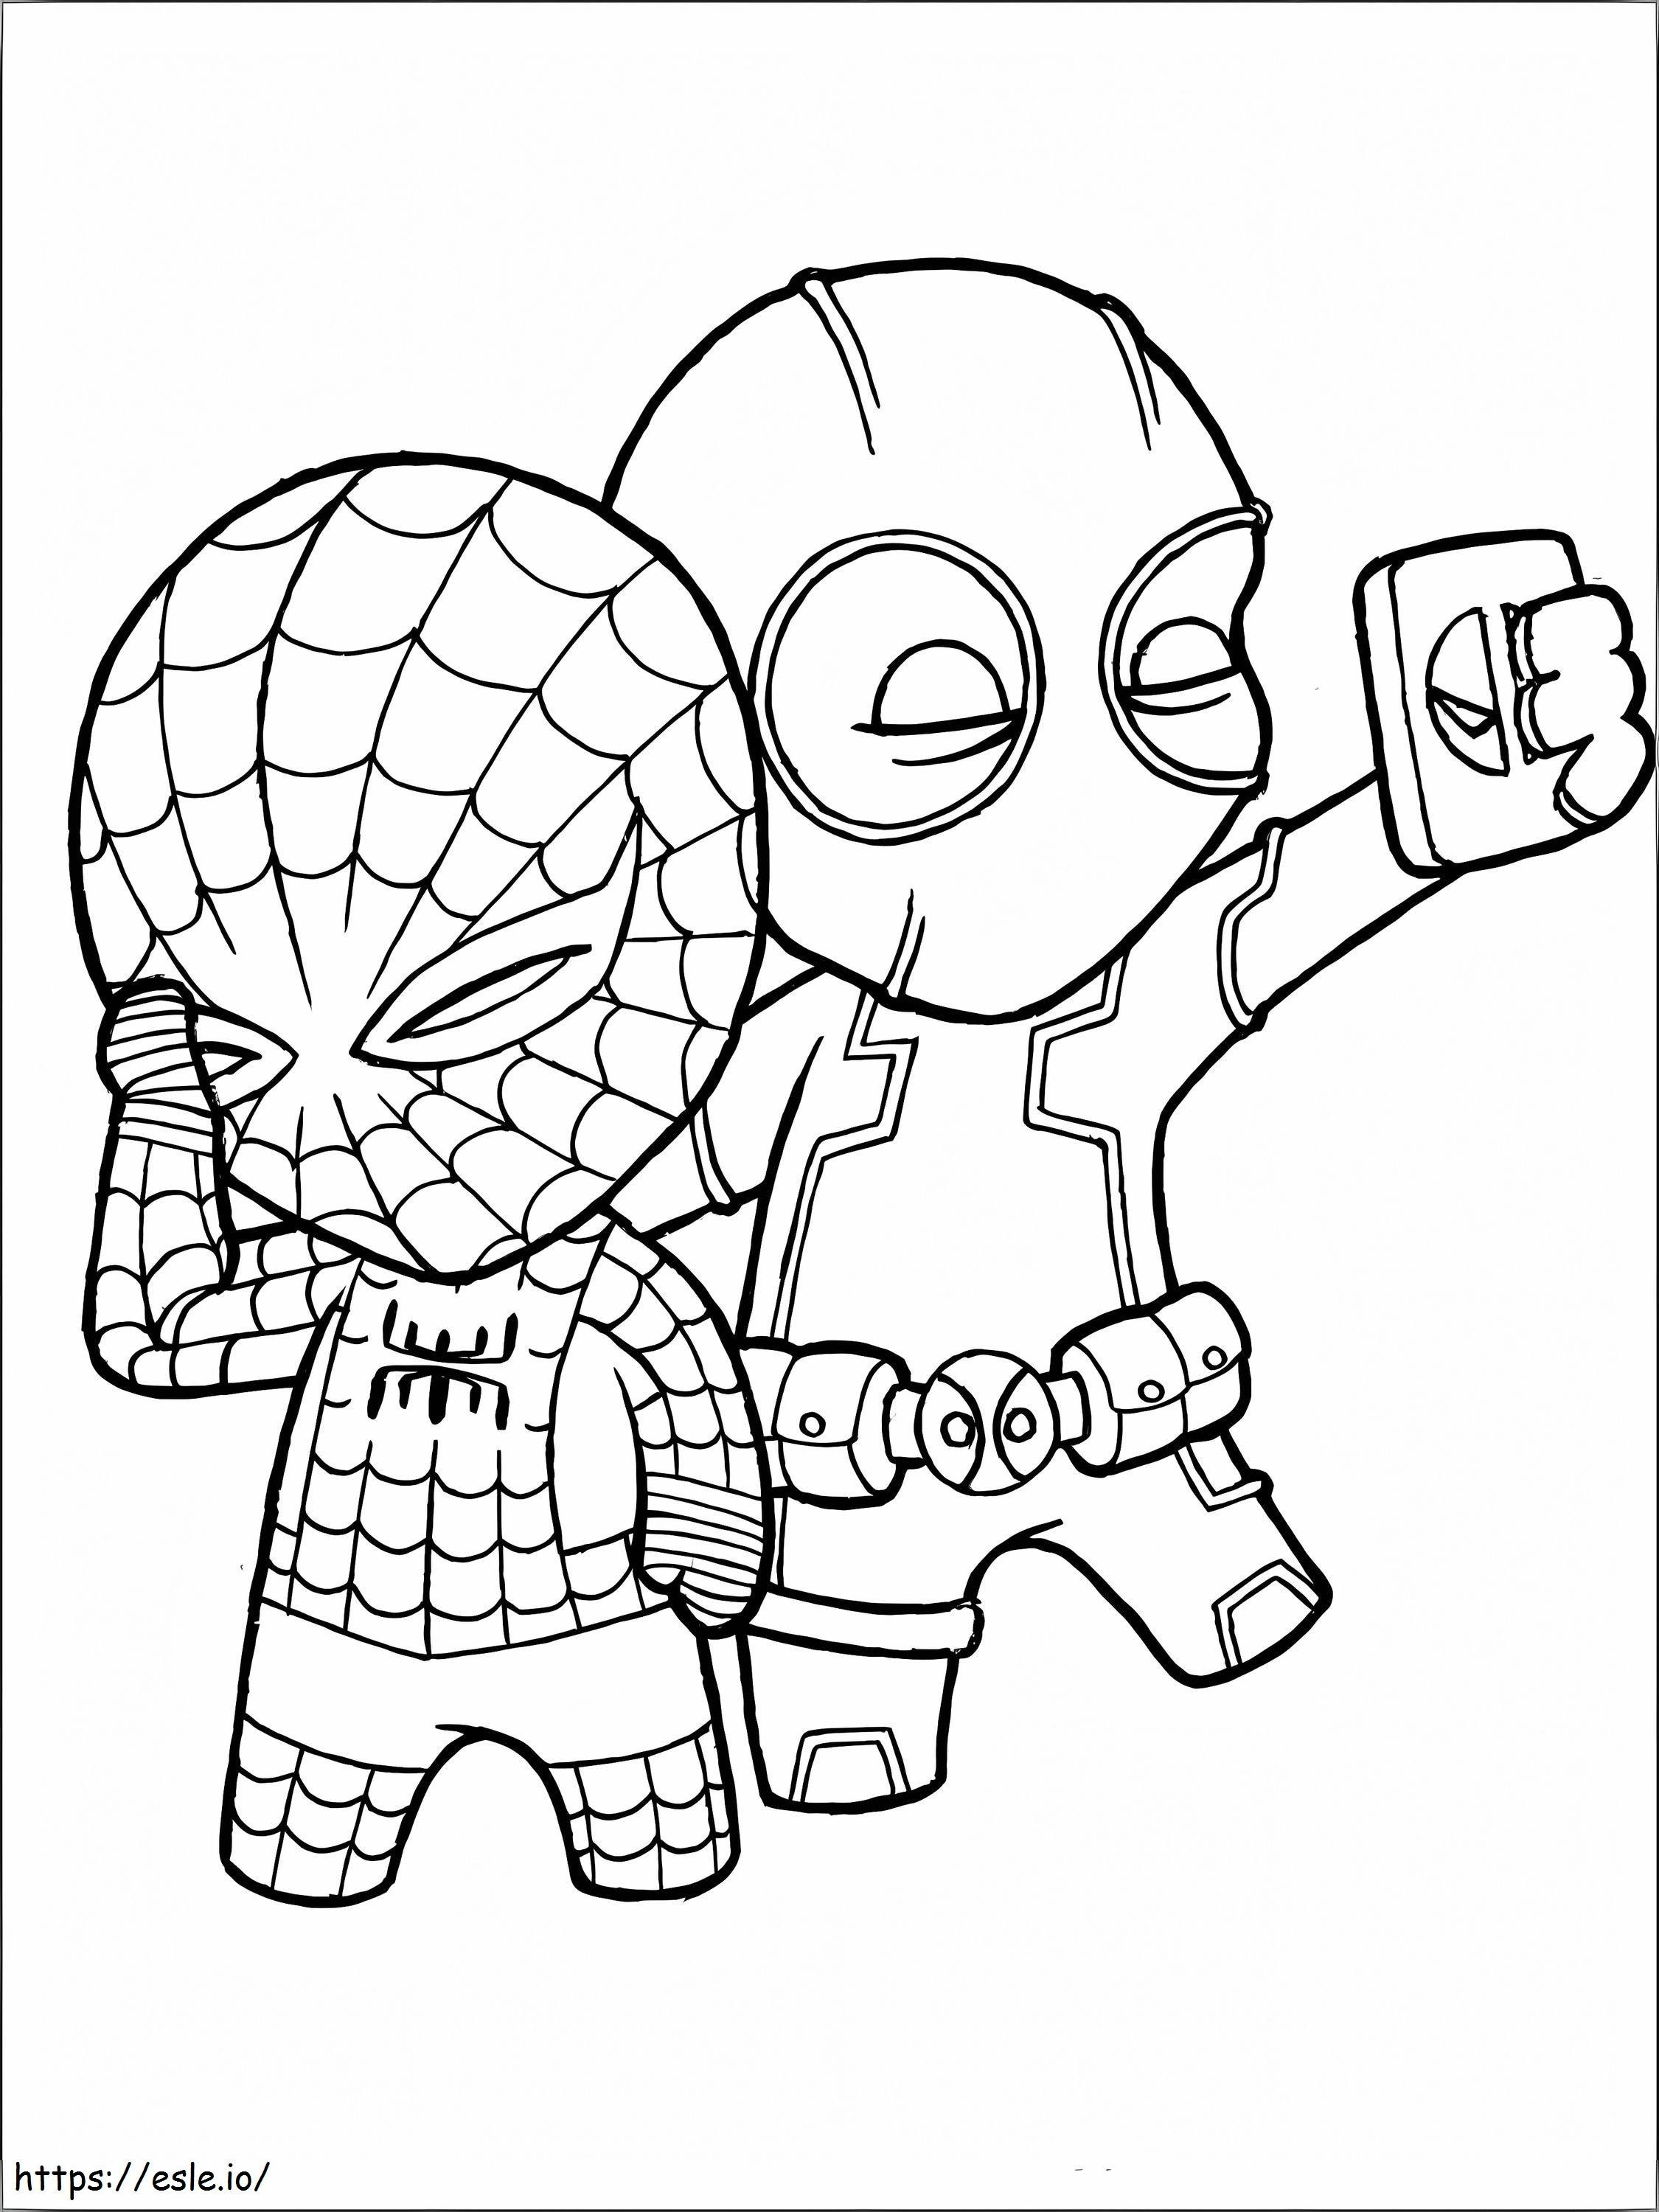 Chibi Deadpool Y Spiderman Selfies coloring page